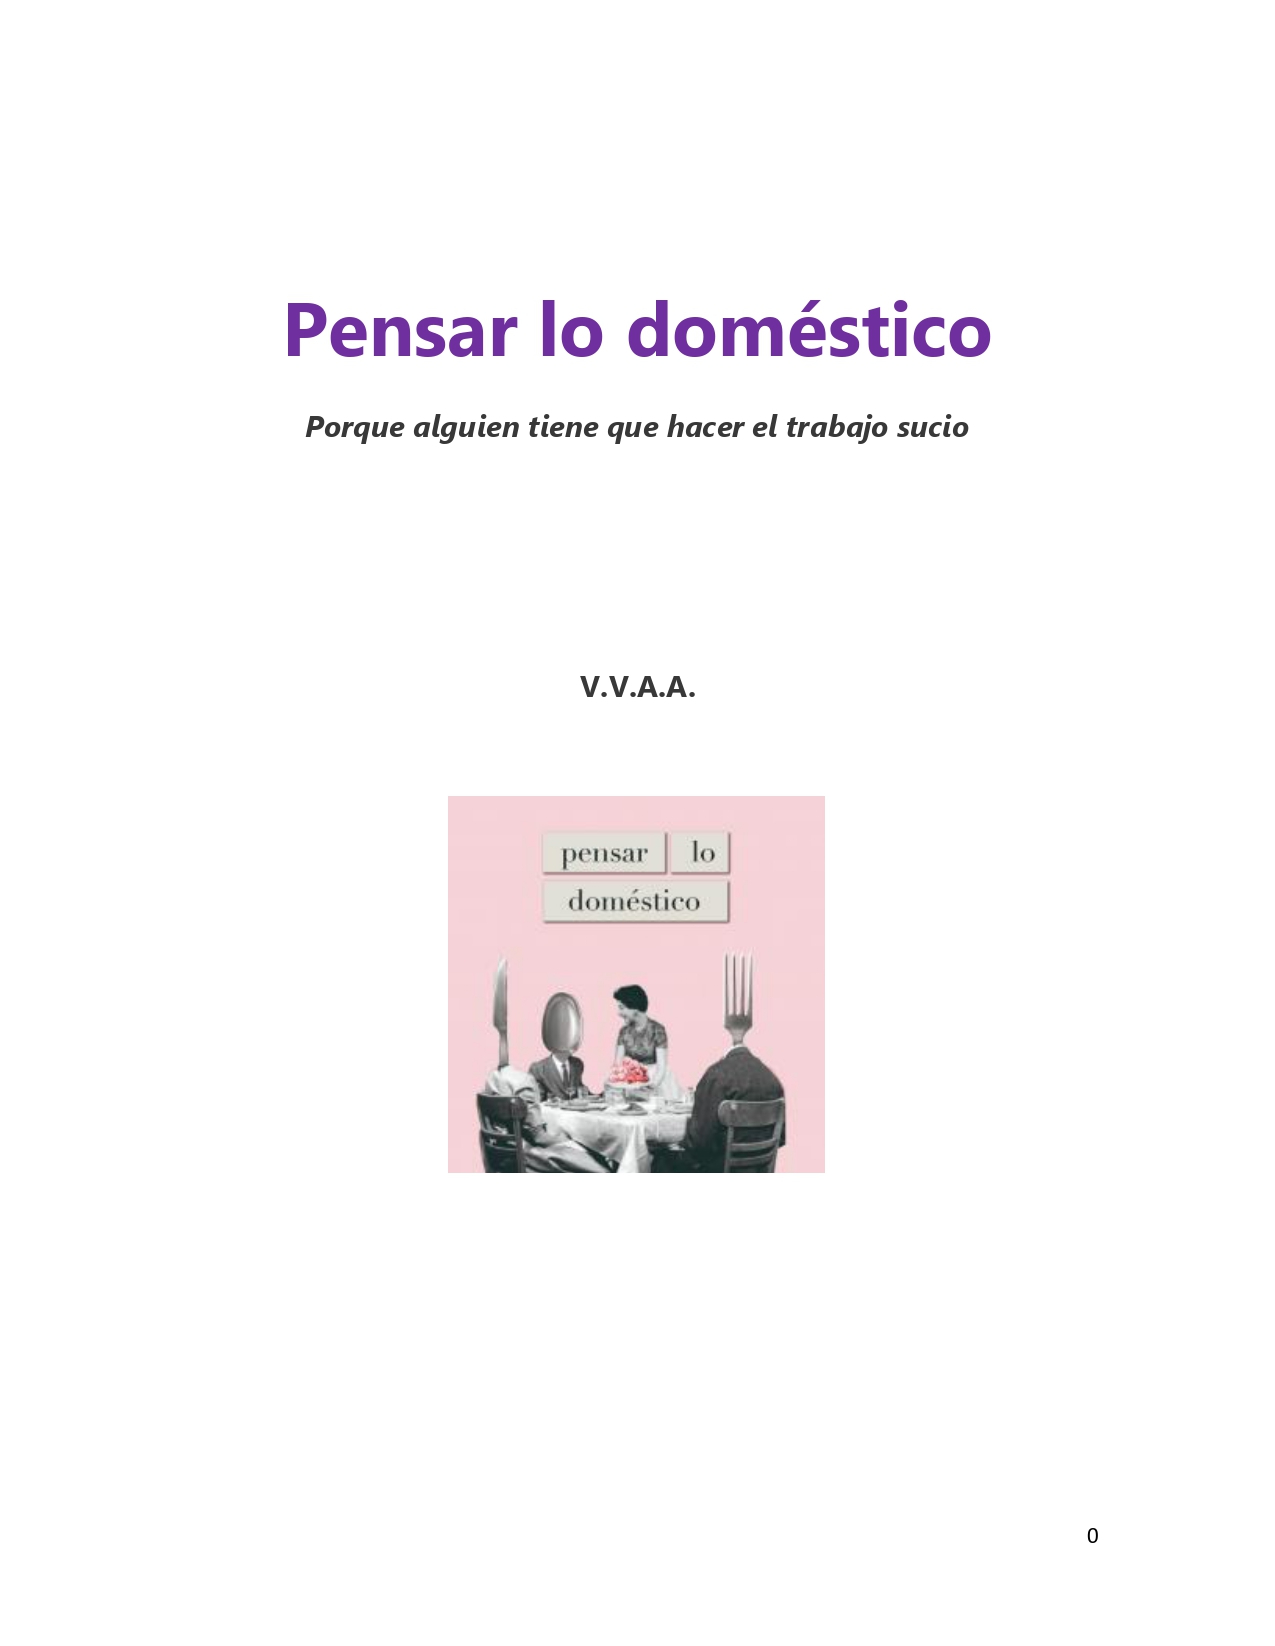 PENSAR LO DOMÉSTICO - Antología completa-1_page-0001